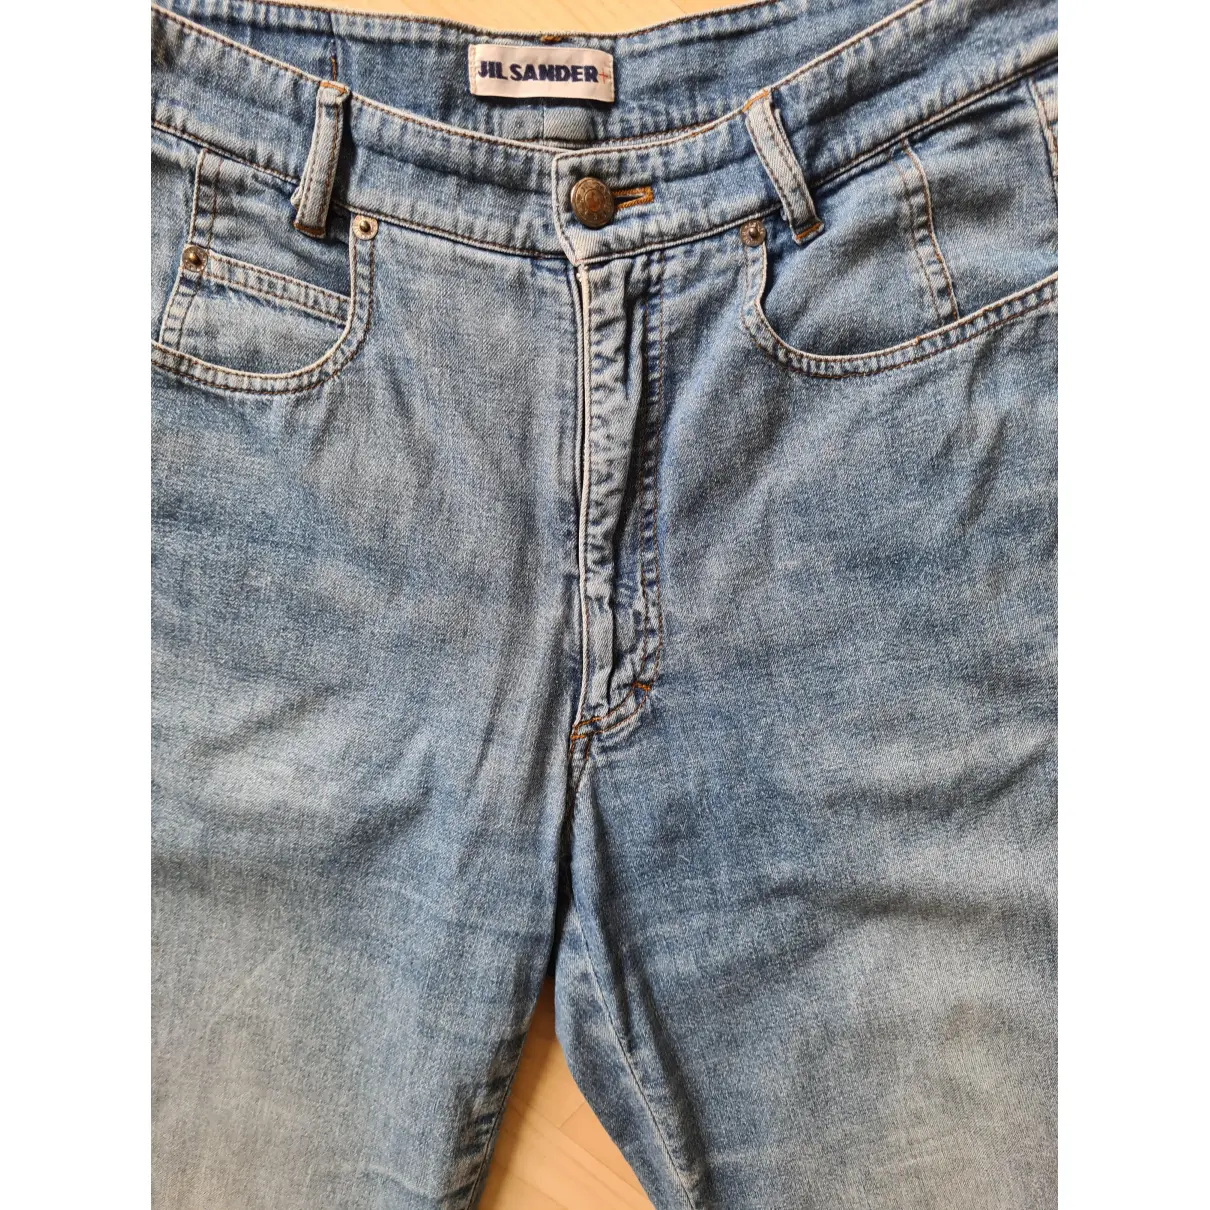 Buy Jil Sander Large jeans online - Vintage